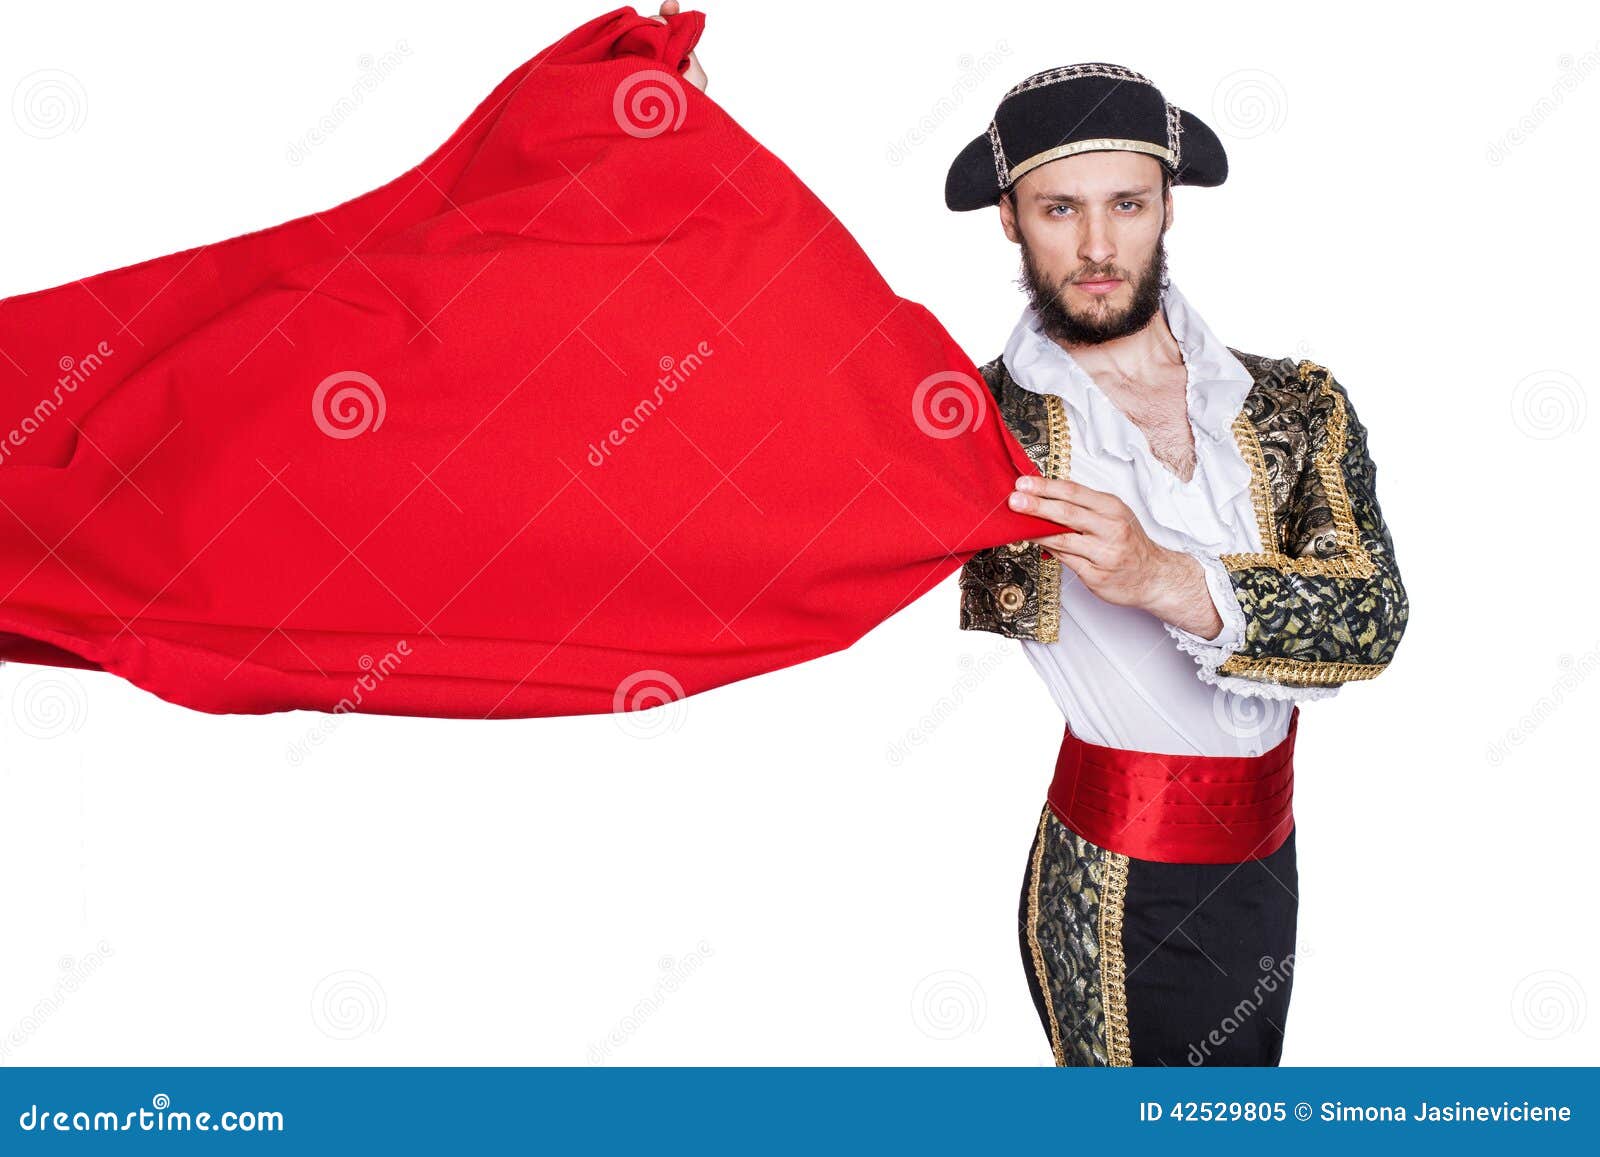 matador throwing a red cape